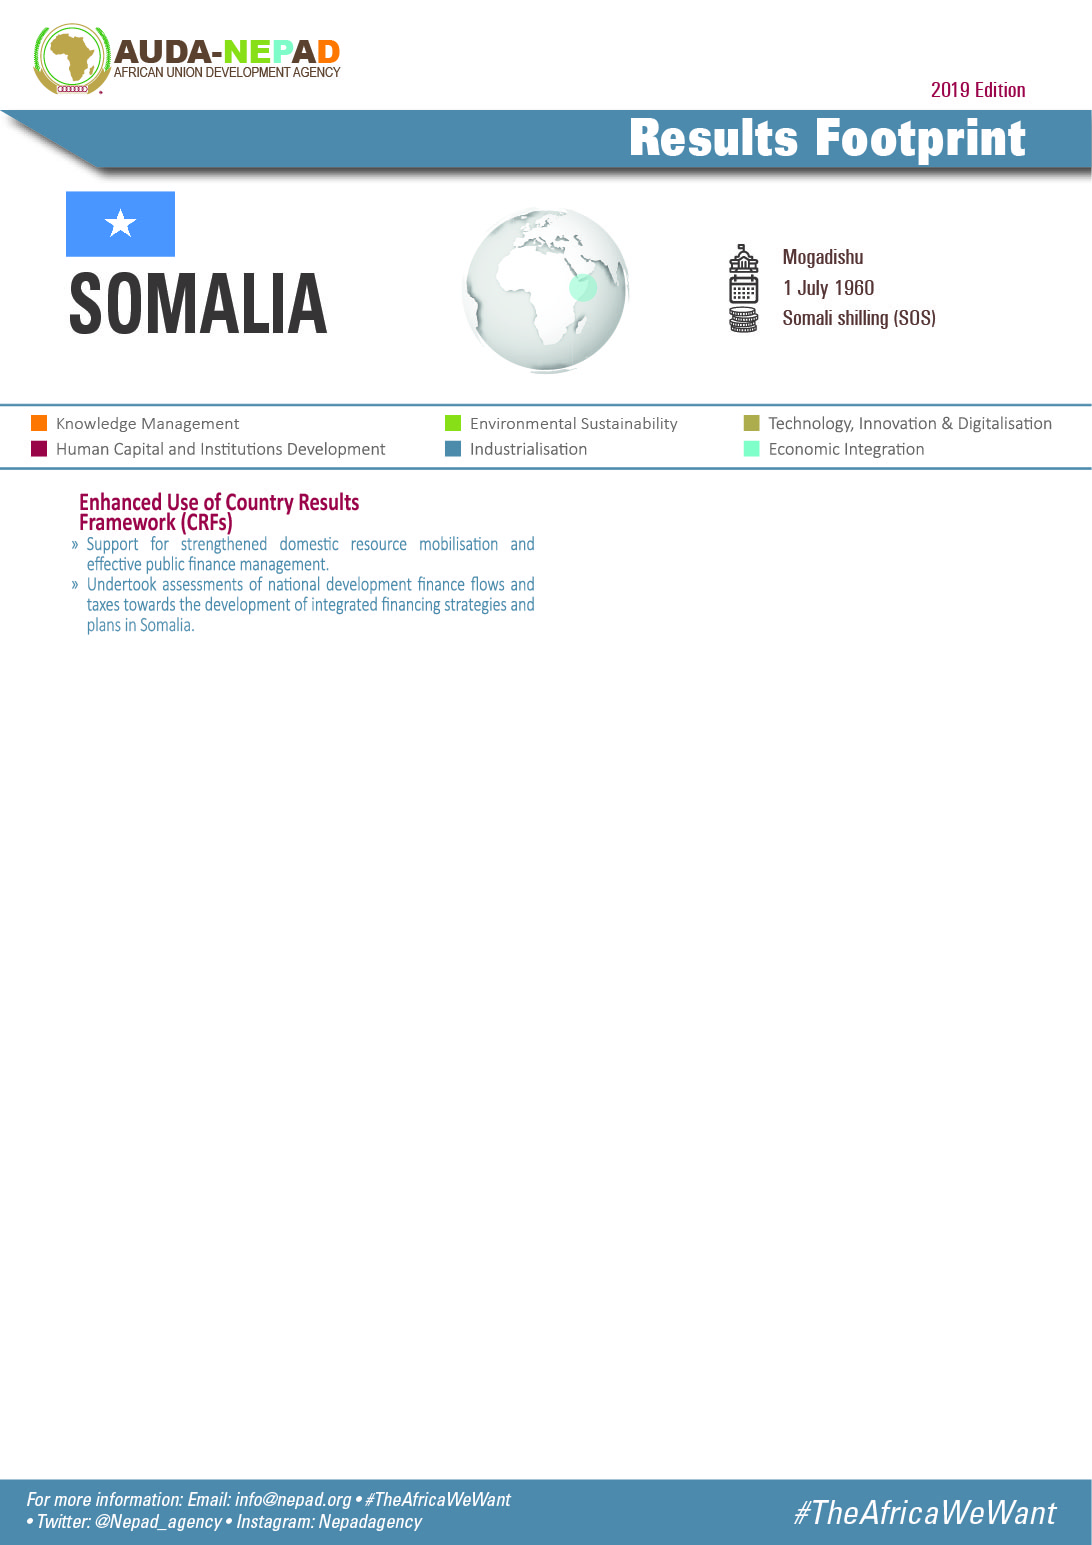 2019 AUDA-NEPAD Footprint: Country Profiles: Somalia